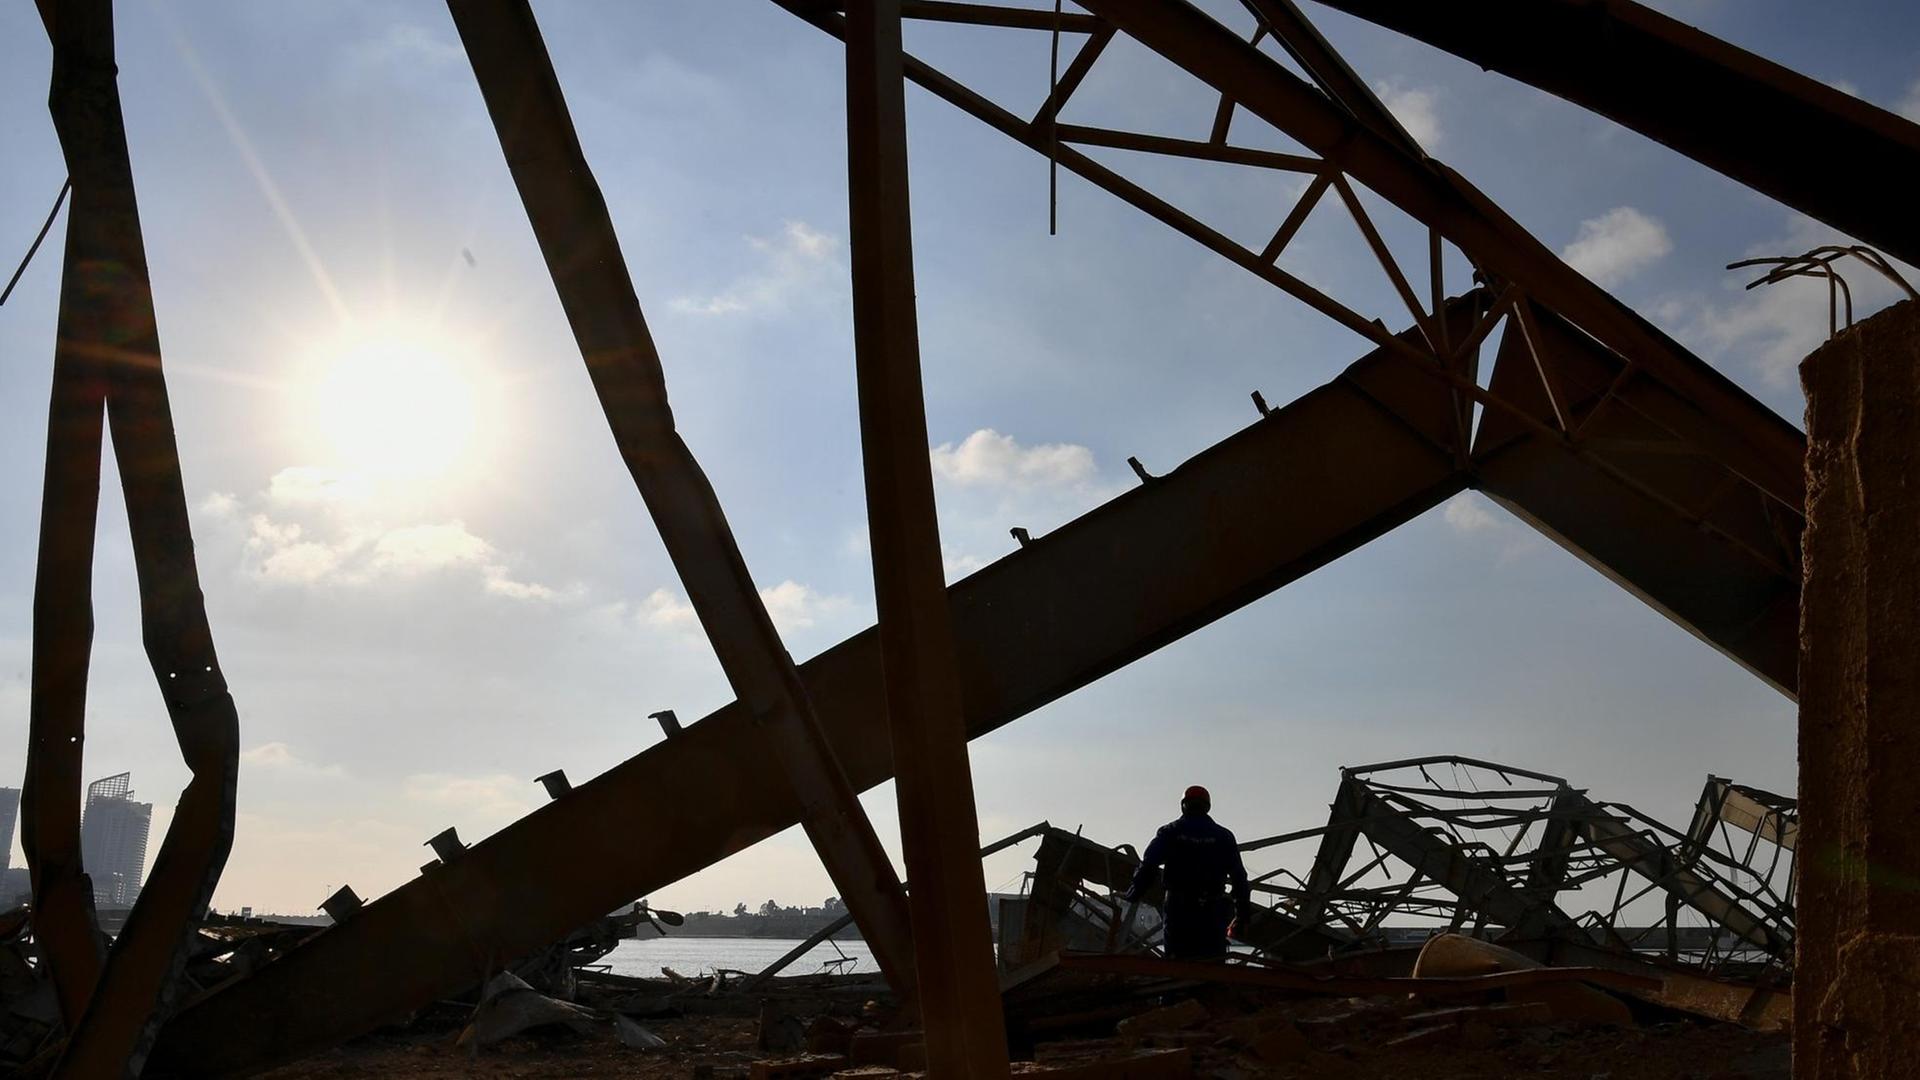 Beirut nach den Explosionen: Das Foto zeigt eine zerstörtes Bauwerk - Stahlträger sind im Gegenlicht zu sehen.